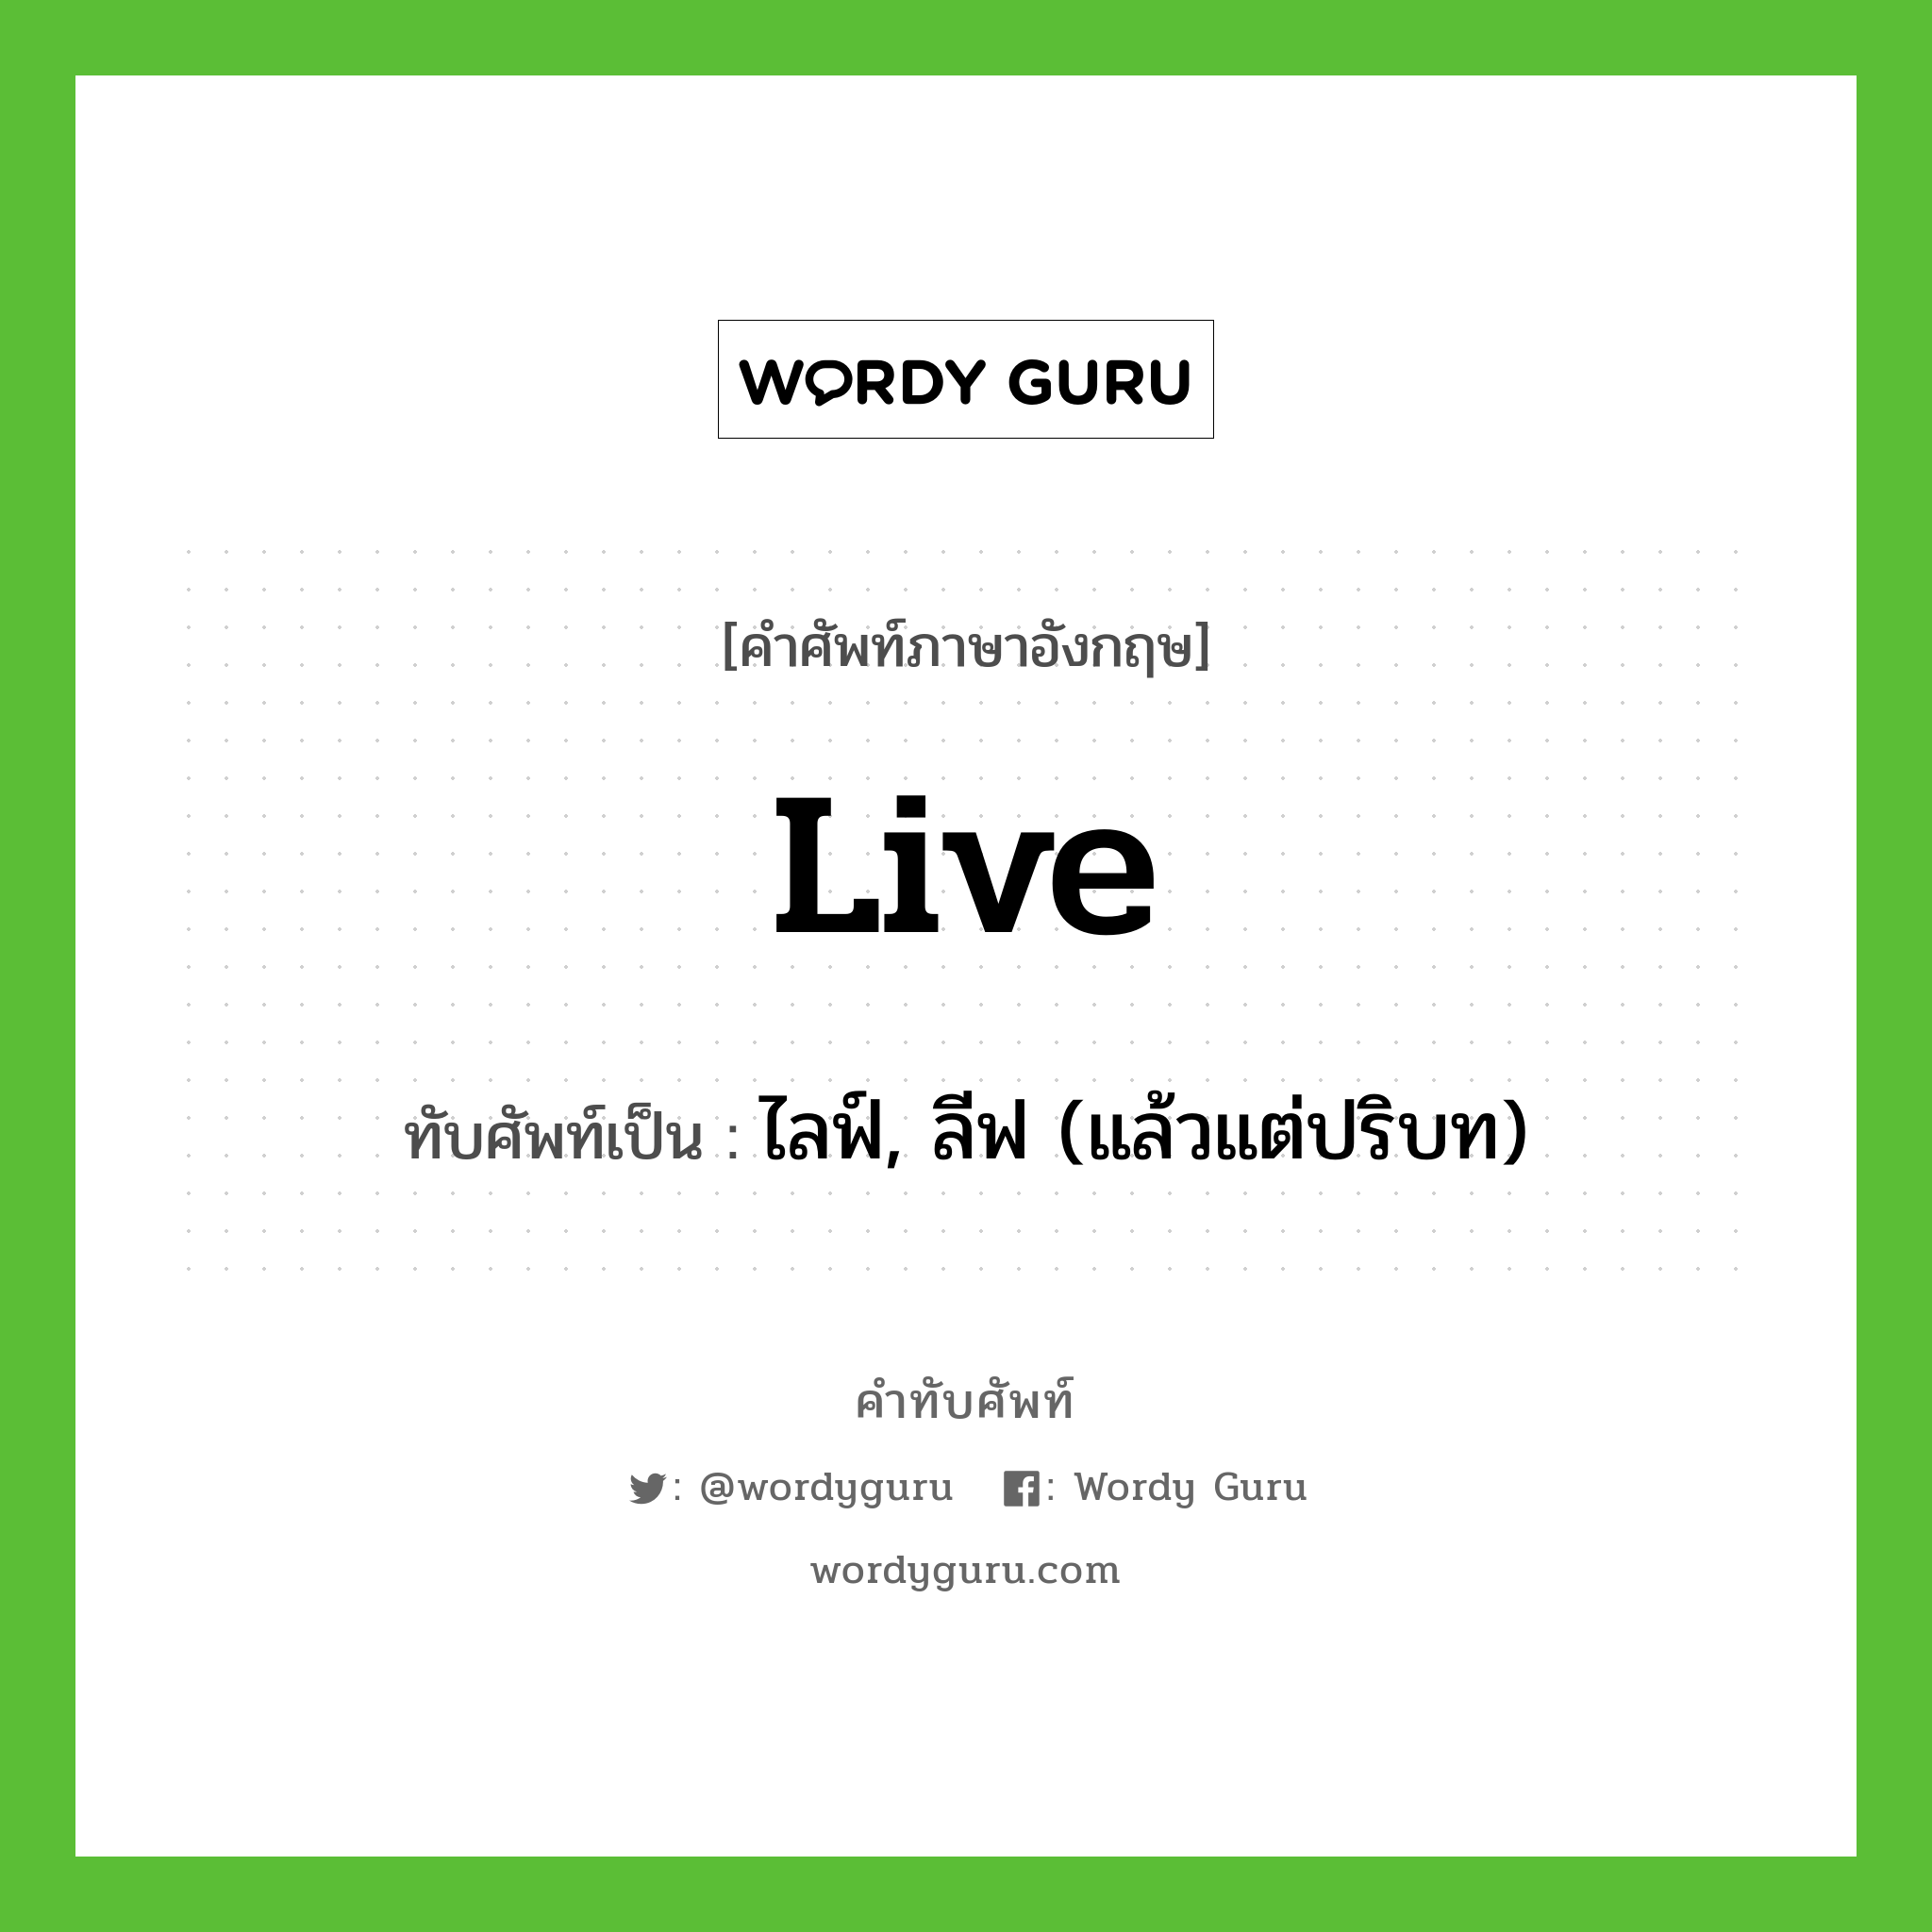 live เขียนเป็นคำไทยว่าอะไร?, คำศัพท์ภาษาอังกฤษ live ทับศัพท์เป็น ไลฟ์, ลีฟ (แล้วแต่ปริบท)